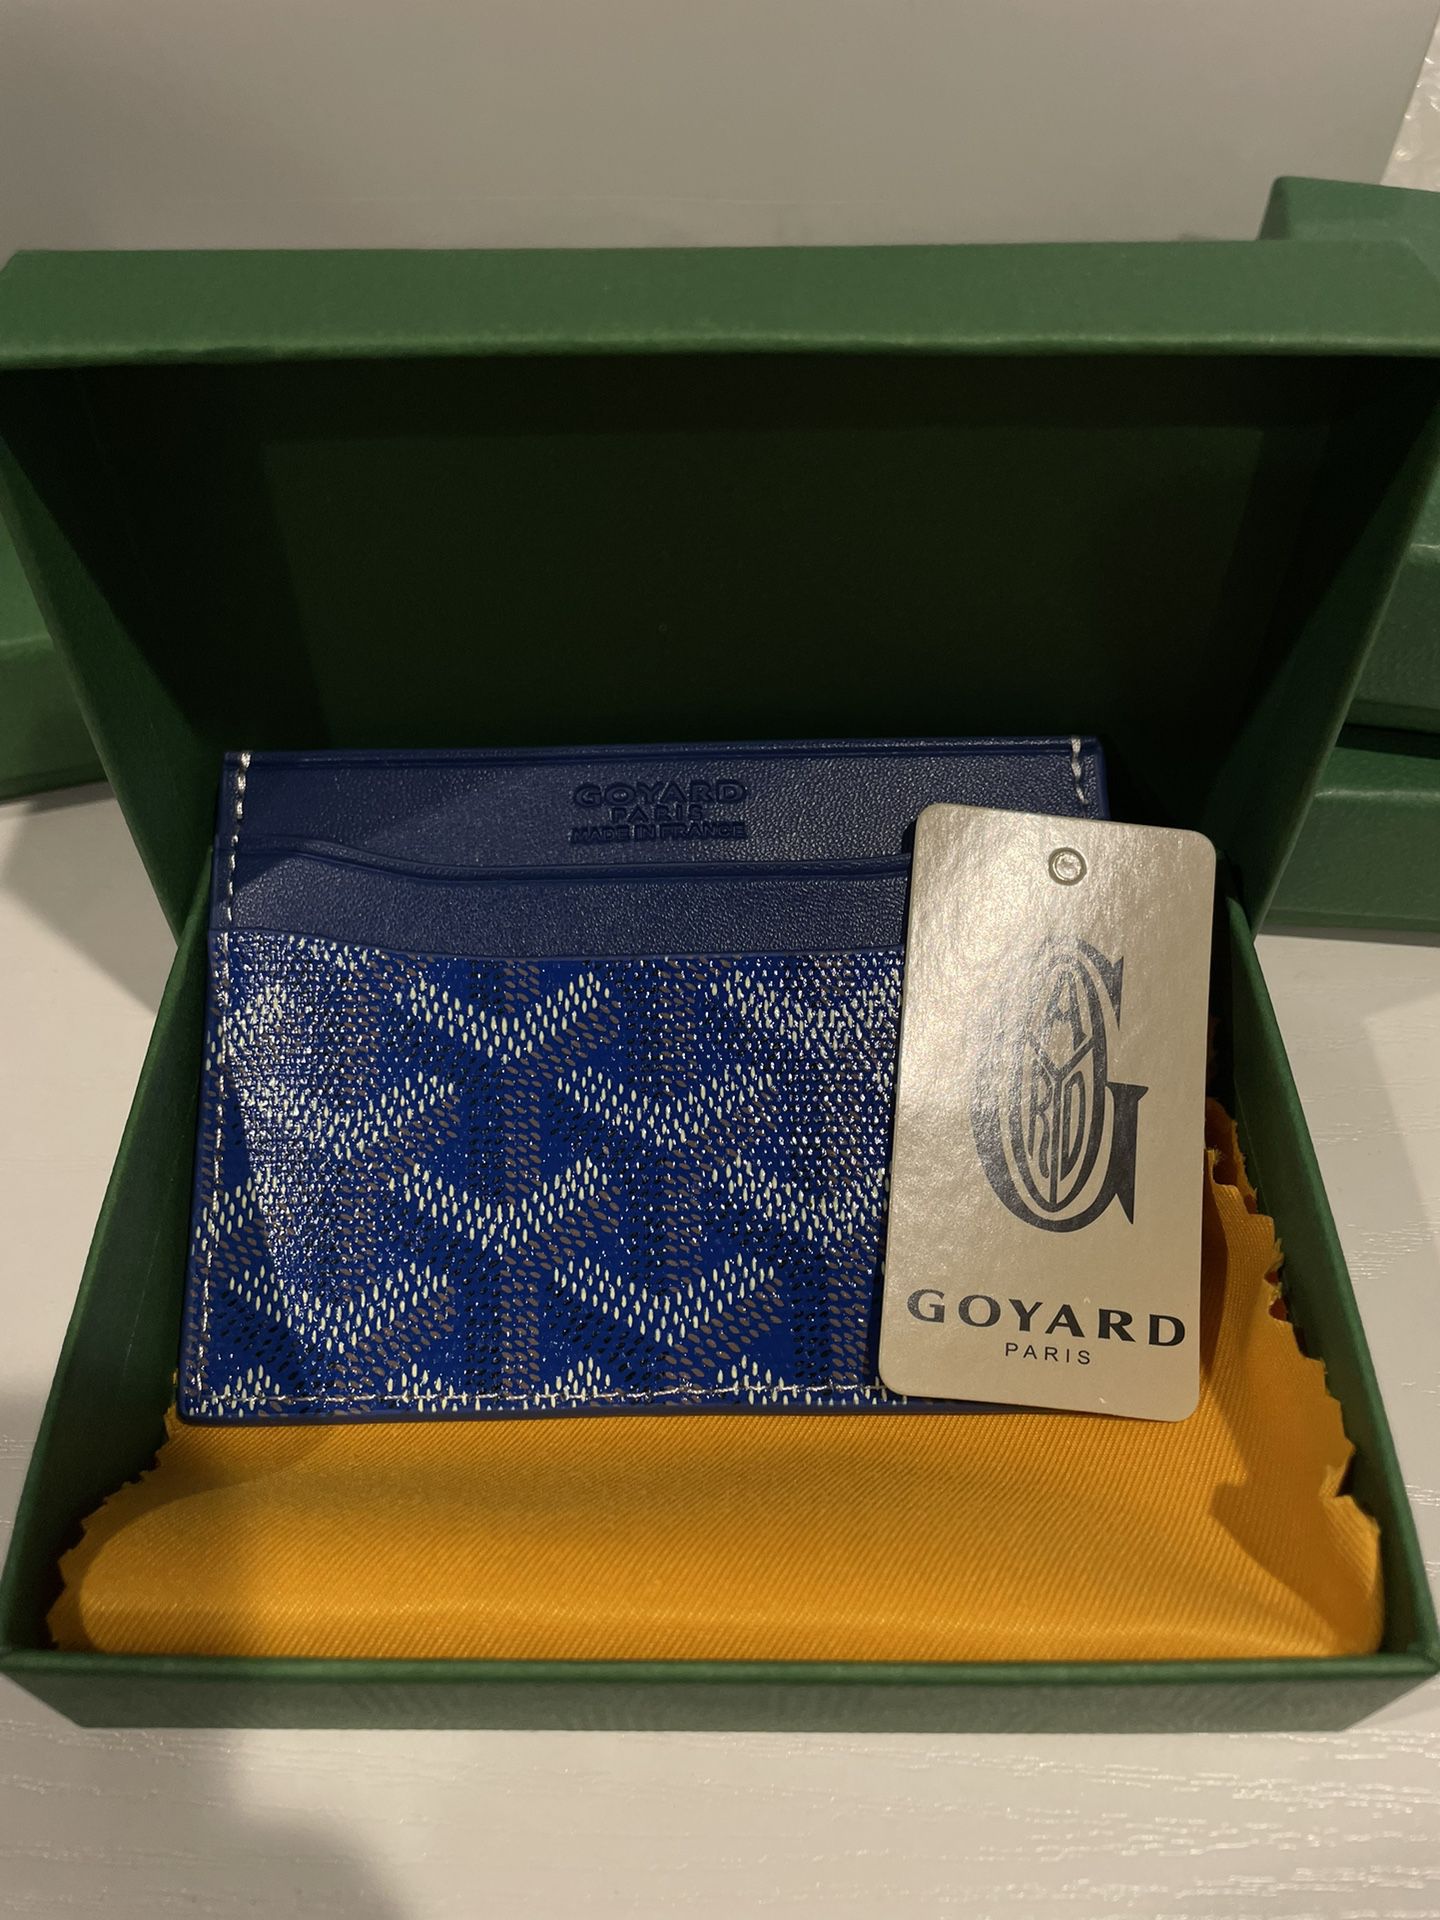 Goyard Card Holder for Sale in Montebello, CA - OfferUp